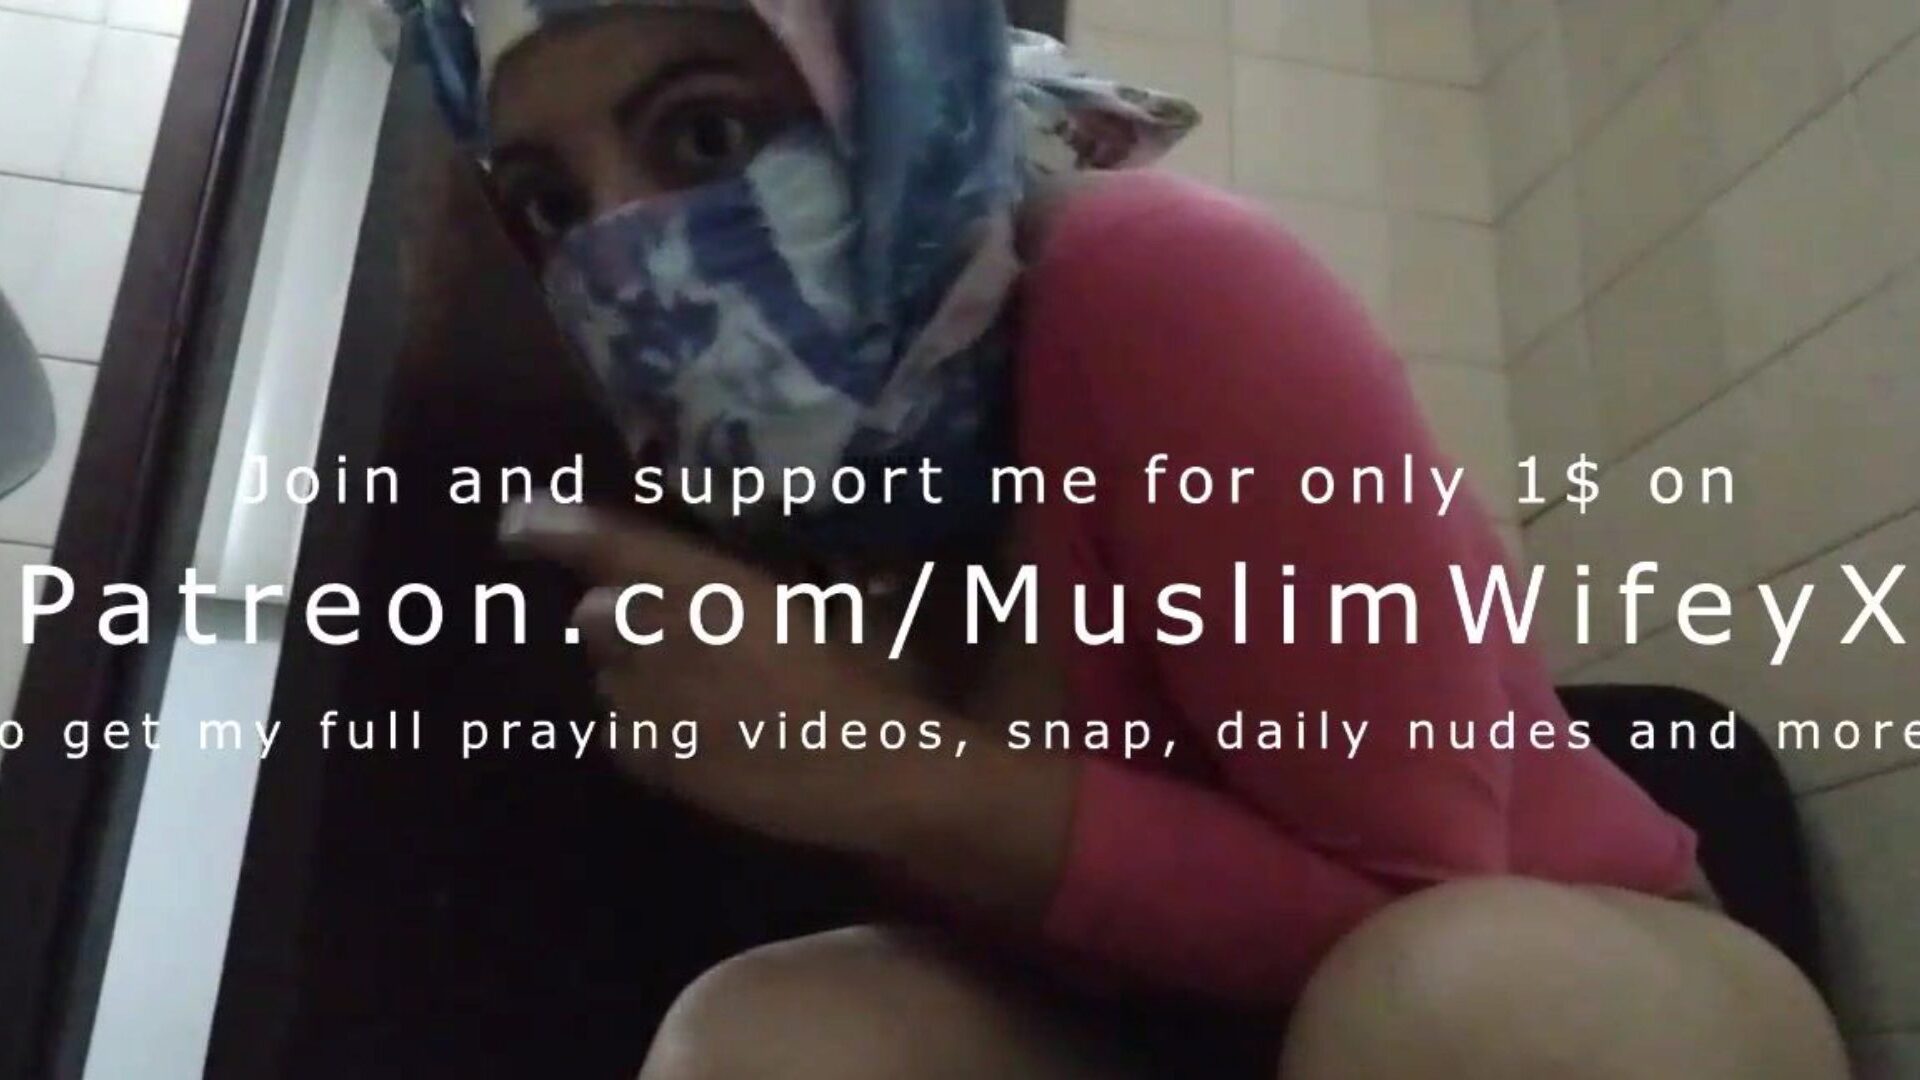 echte hijabi moslim moeder probeert stil te blijven en masturberen achter echtgenoten terug naar orgasme spuiten